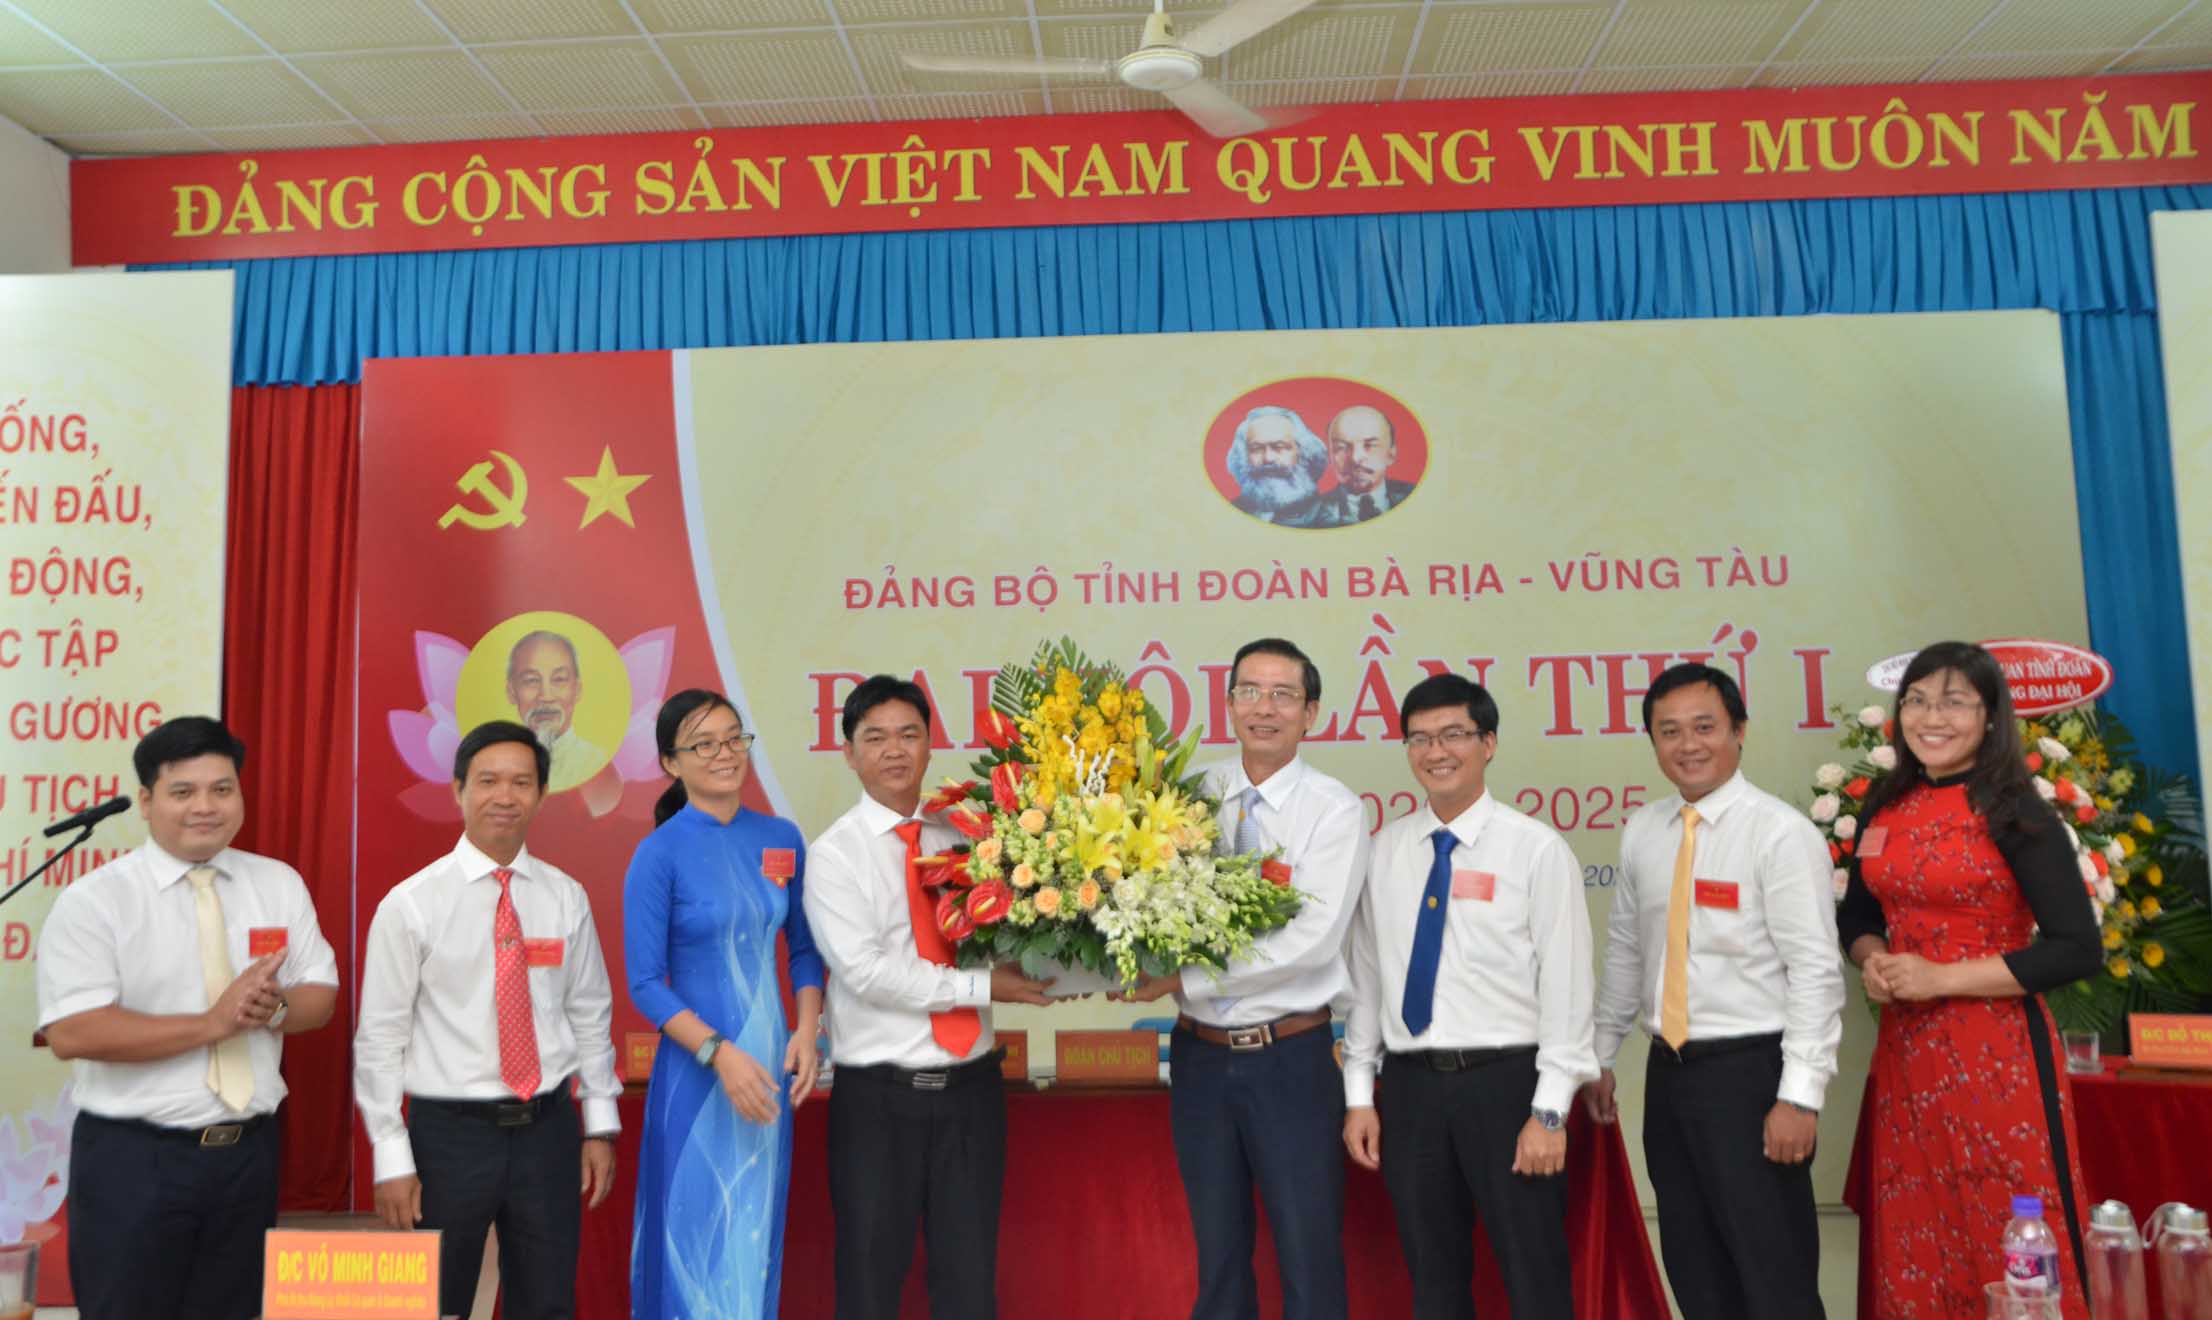 Đồng chí Võ Minh Giang, Phó Bí thư Đảng ủy Khối Cơ quan và DN tỉnh tặng hoa chúc mừng BCH Đảng bộ Tỉnh Đoàn, nhiệm kỳ 2020-2025.